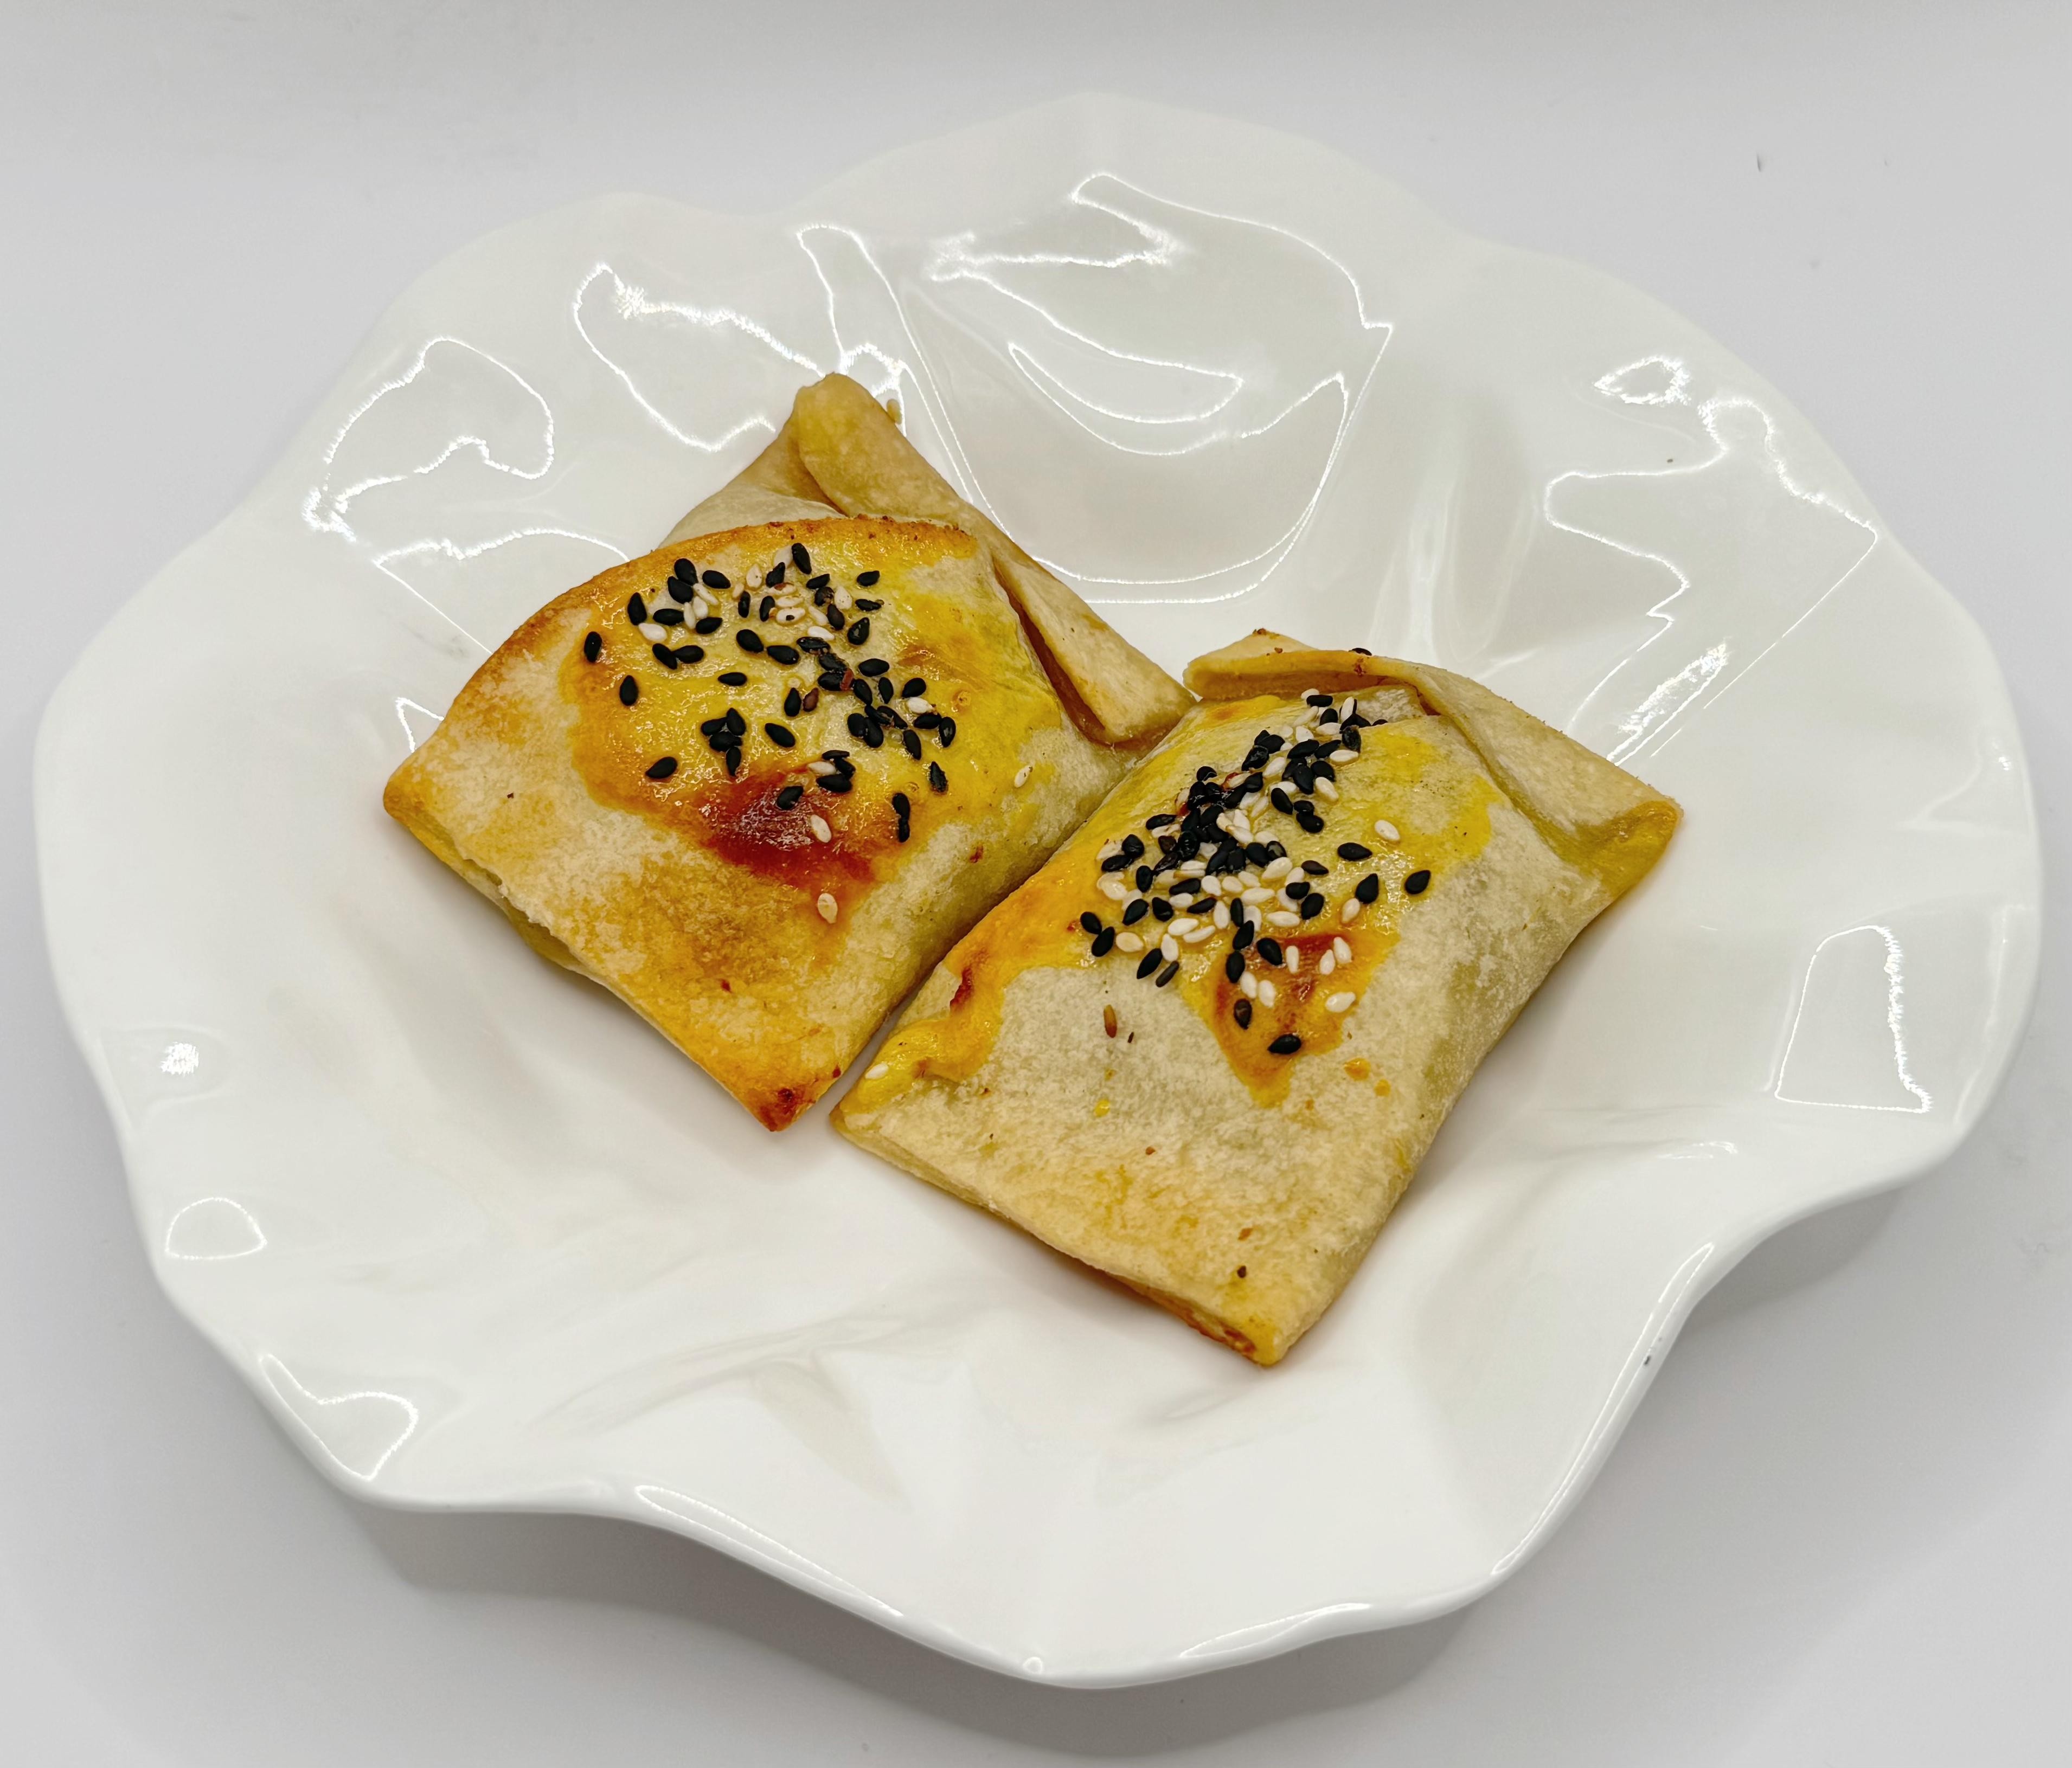 Samsa  (2 piece per serve) 烤包子